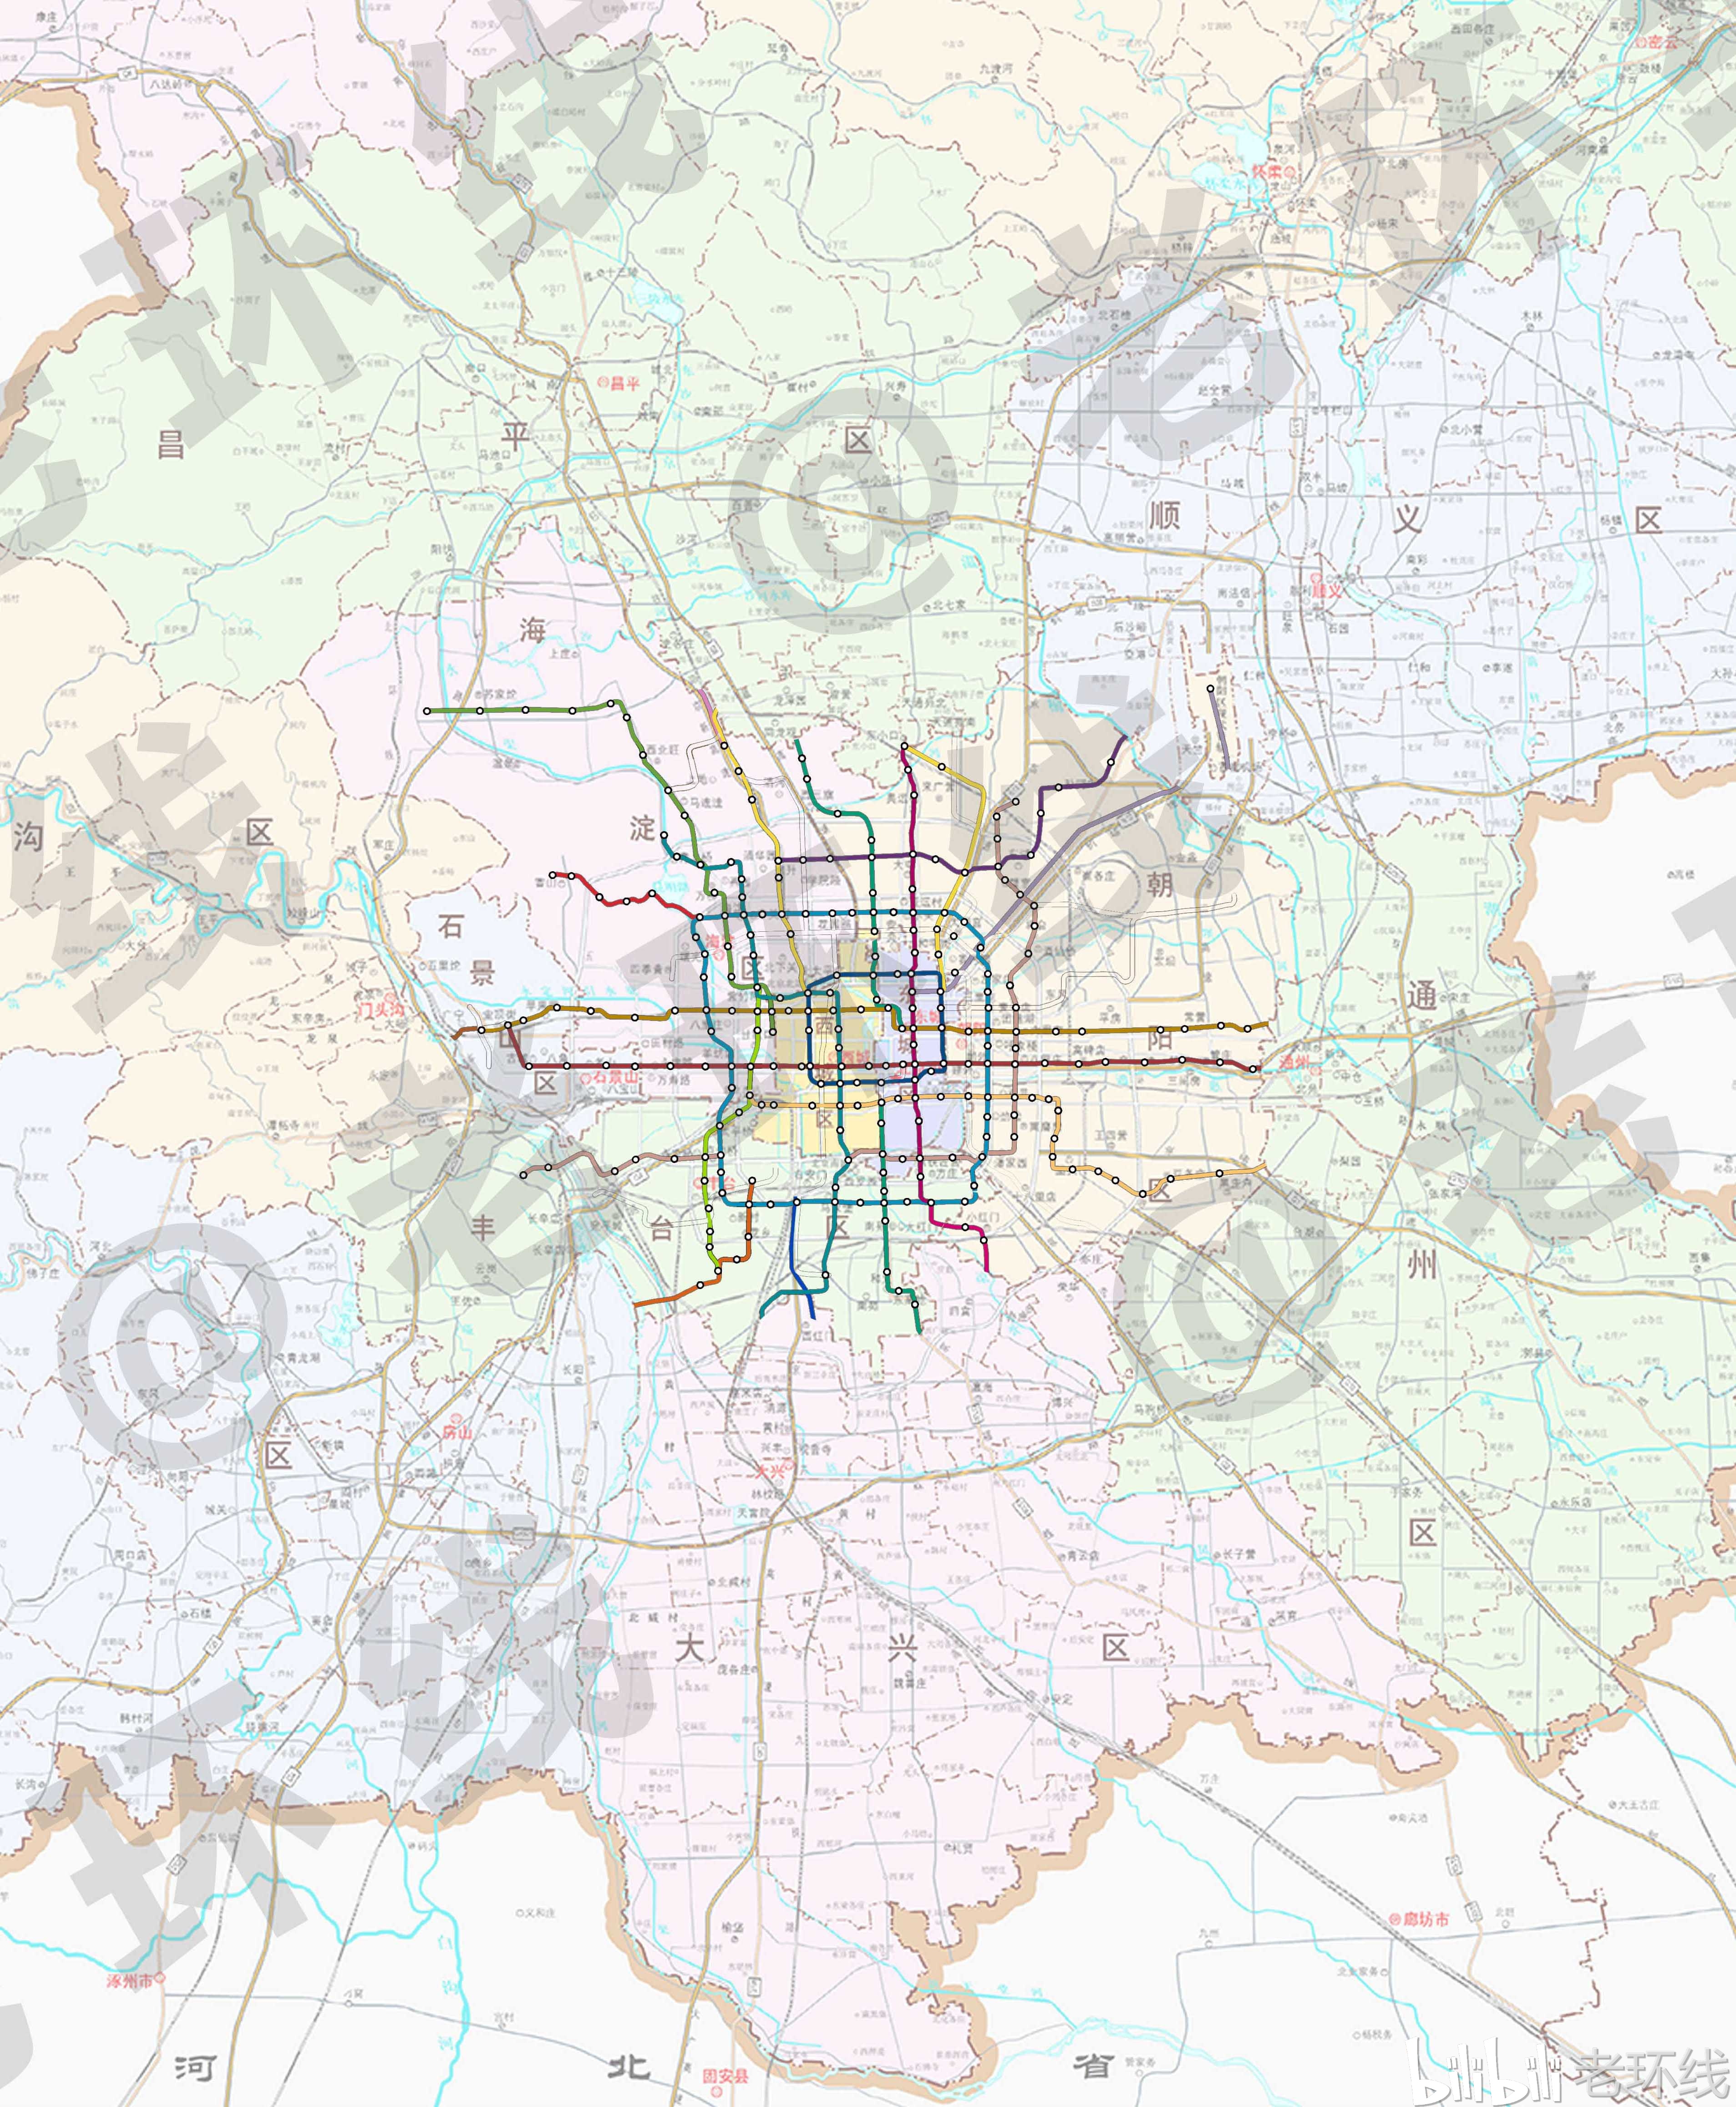 北京地铁线路图——"空城计"    在新一轮的北京总体规划中(2016-2035